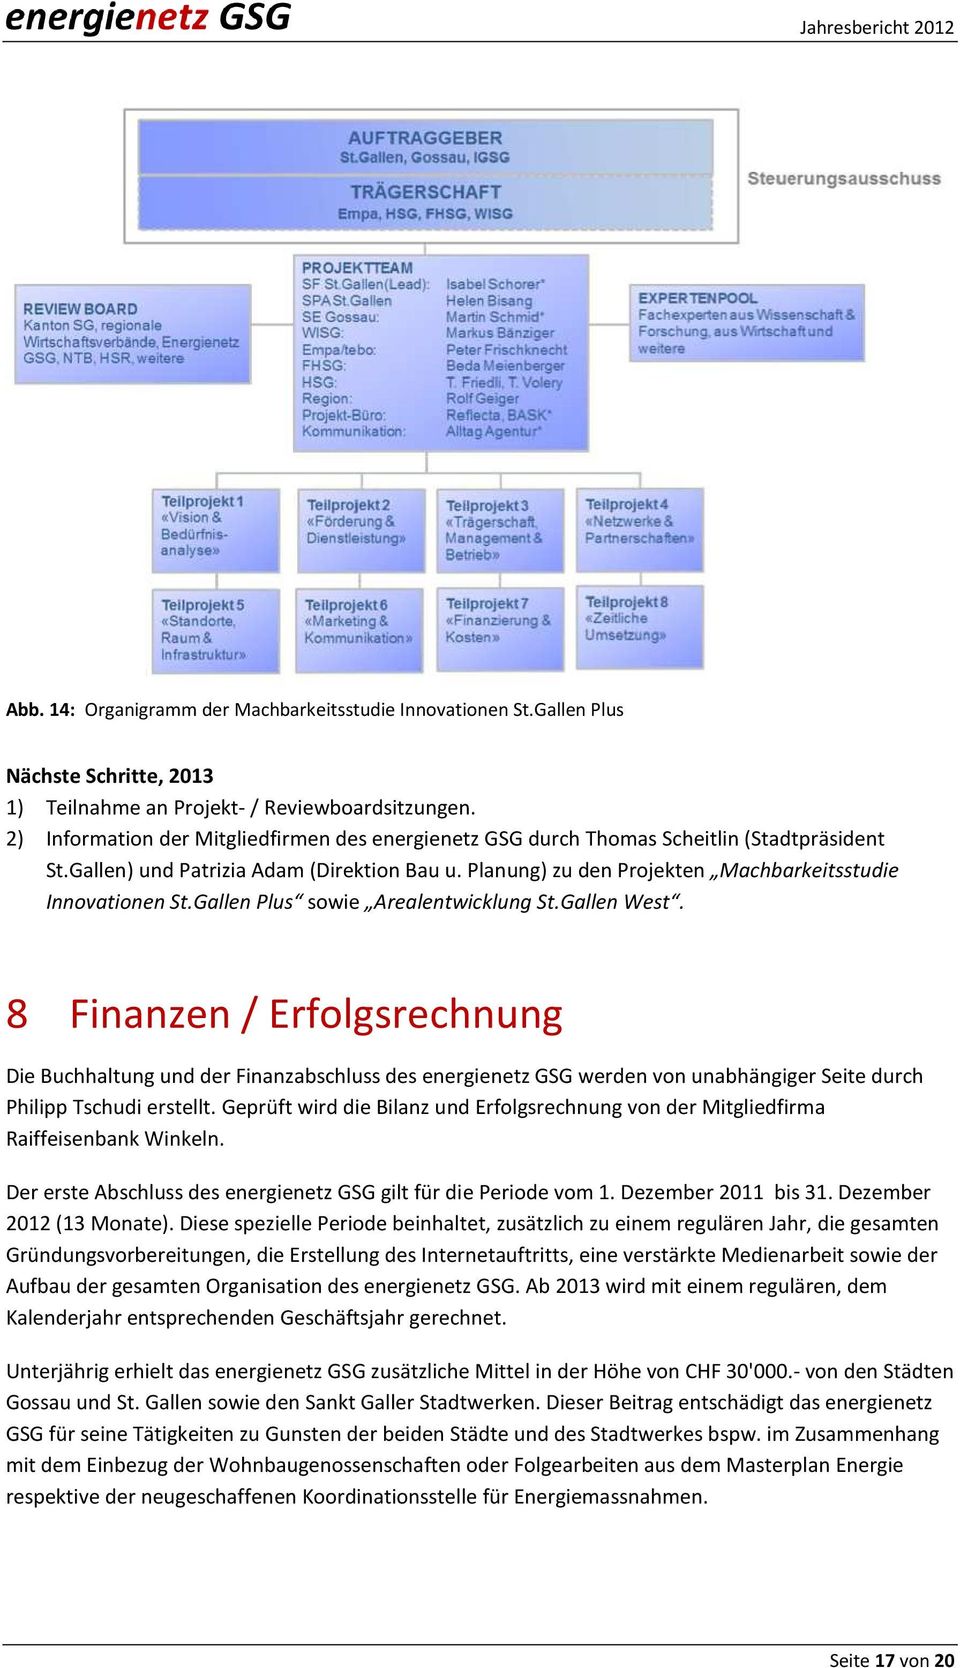 Planung) zu den Projekten Machbarkeitsstudie Innovationen St.Gallen Plus sowie Arealentwicklung St.Gallen West.